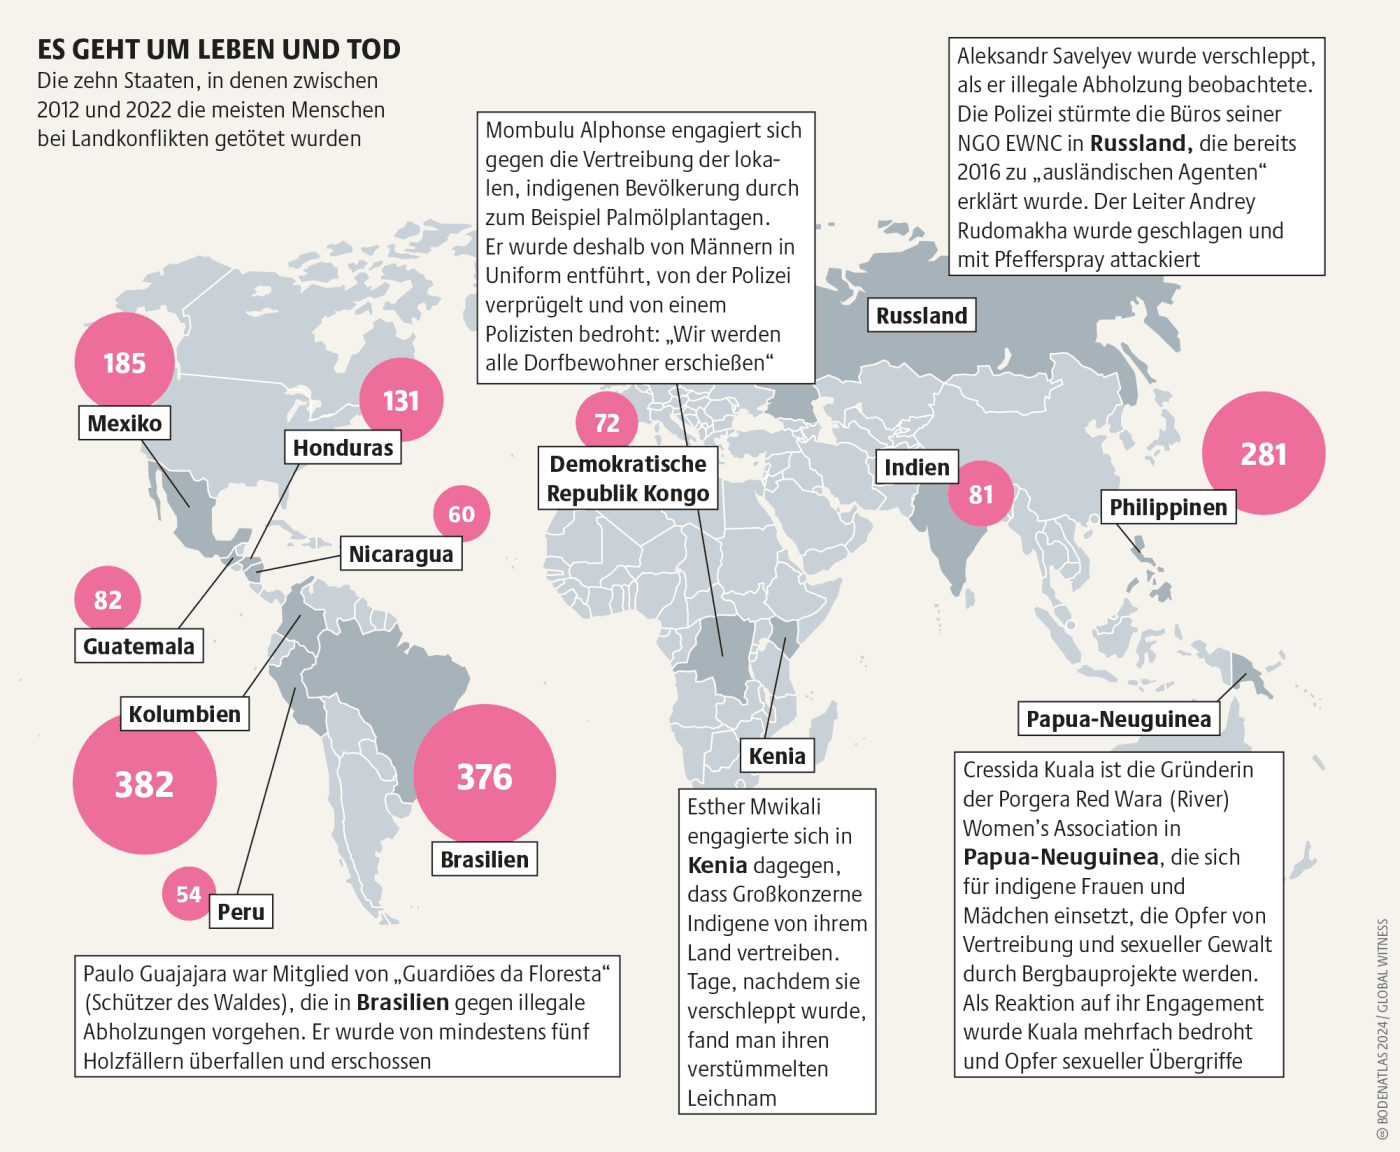 Grafik zu den 10 Staaten, in denen zwischen 2012 und 2022 die meisten Menschen bei Landkonflikten getötet wurden